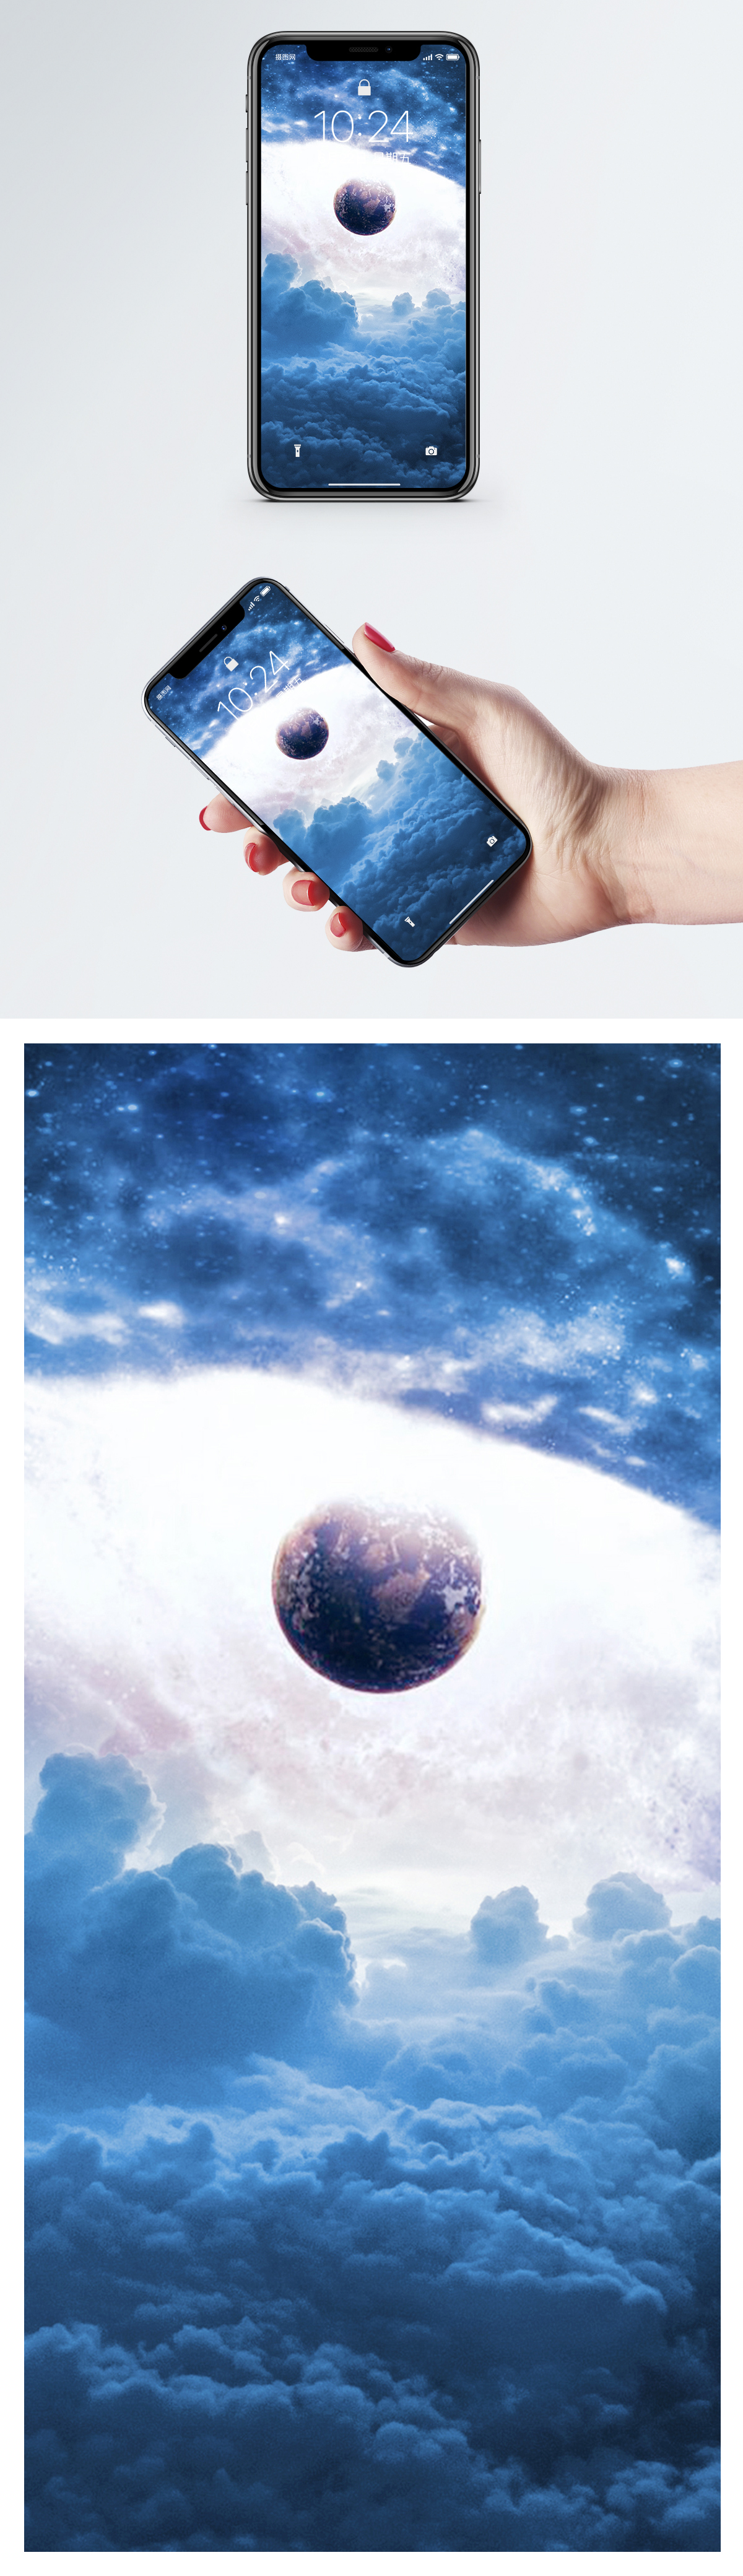 星空宇宙手機壁紙圖片素材 Jpg圖片尺寸86 300px 高清圖片 Zh Lovepik Com